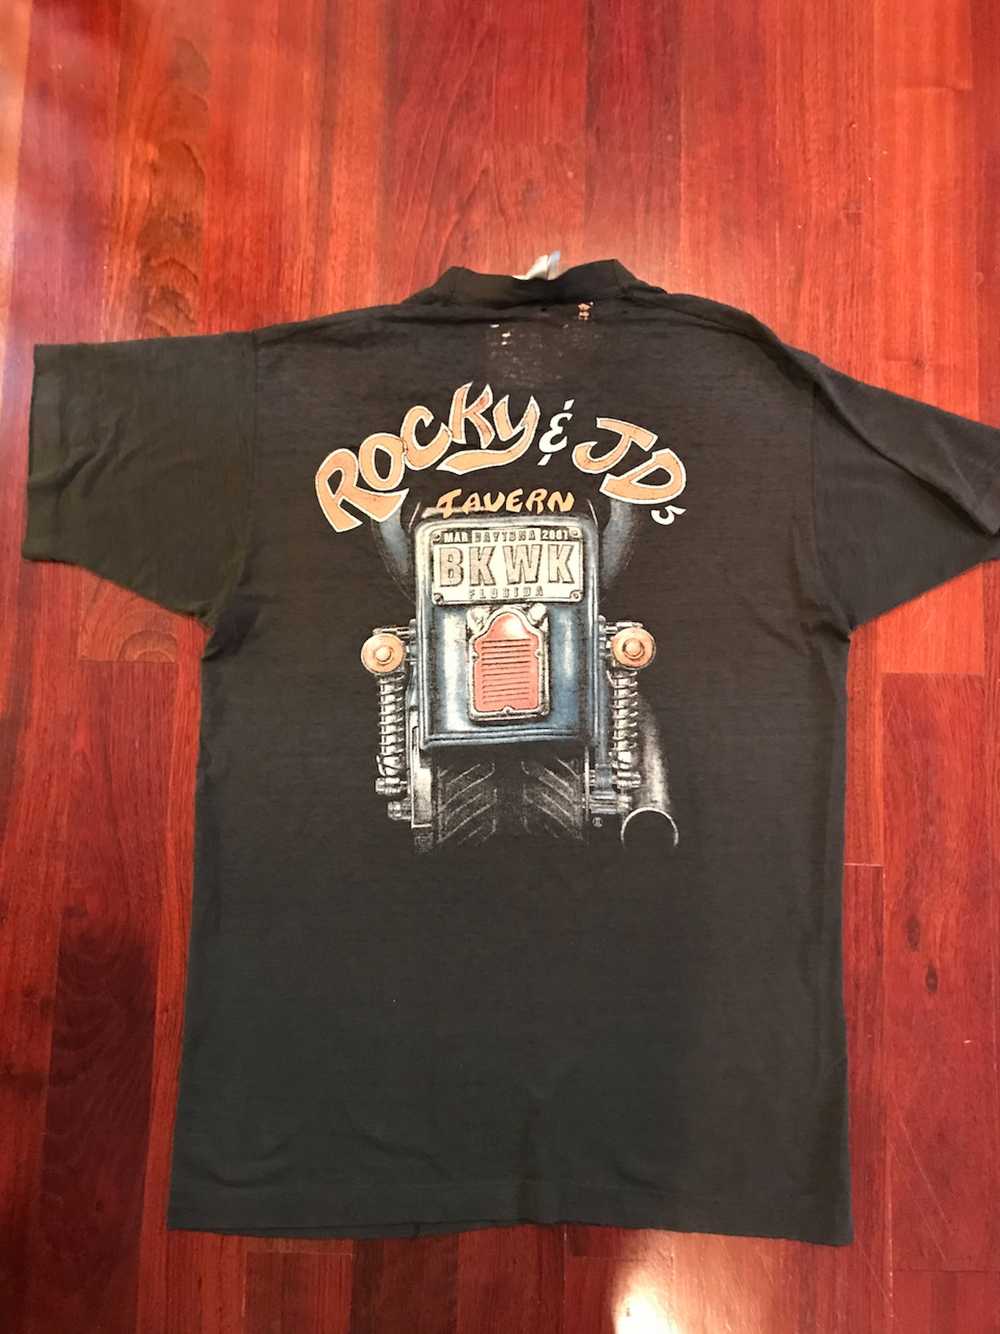 Vintage Rocky + JD Tavern Bike Week Tee - image 2